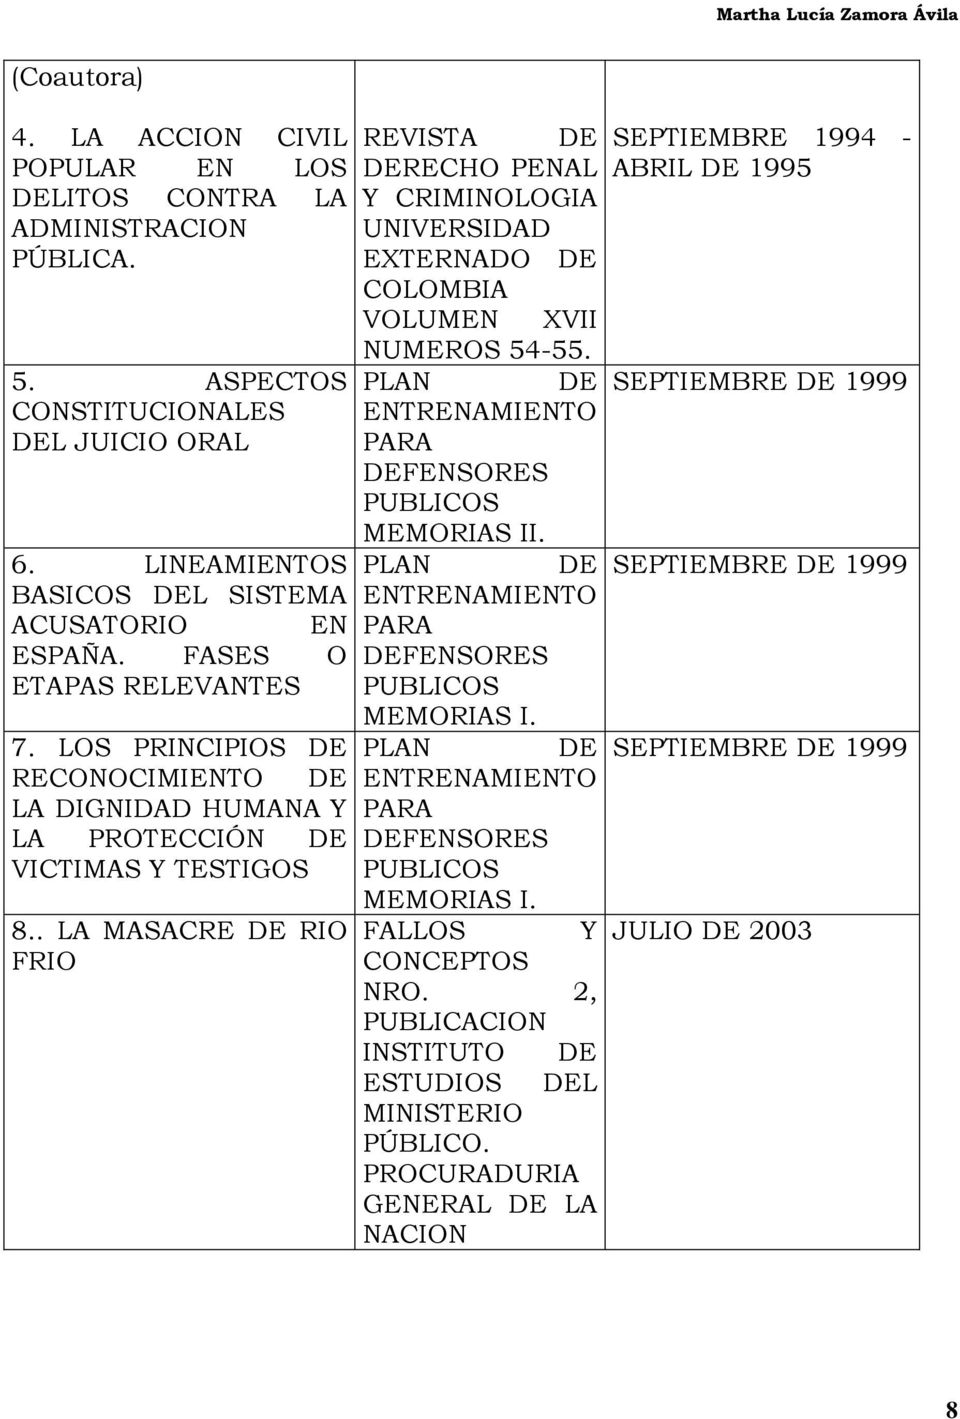 LINEAMIENTOS PLAN DE SEPTIEMBRE DE 1999 BASICOS DEL SISTEMA ENTRENAMIENTO ACUSATORIO EN PARA ESPAÑA. FASES O DEFENSORES ETAPAS RELEVANTES PUBLICOS MEMORIAS I. 7.